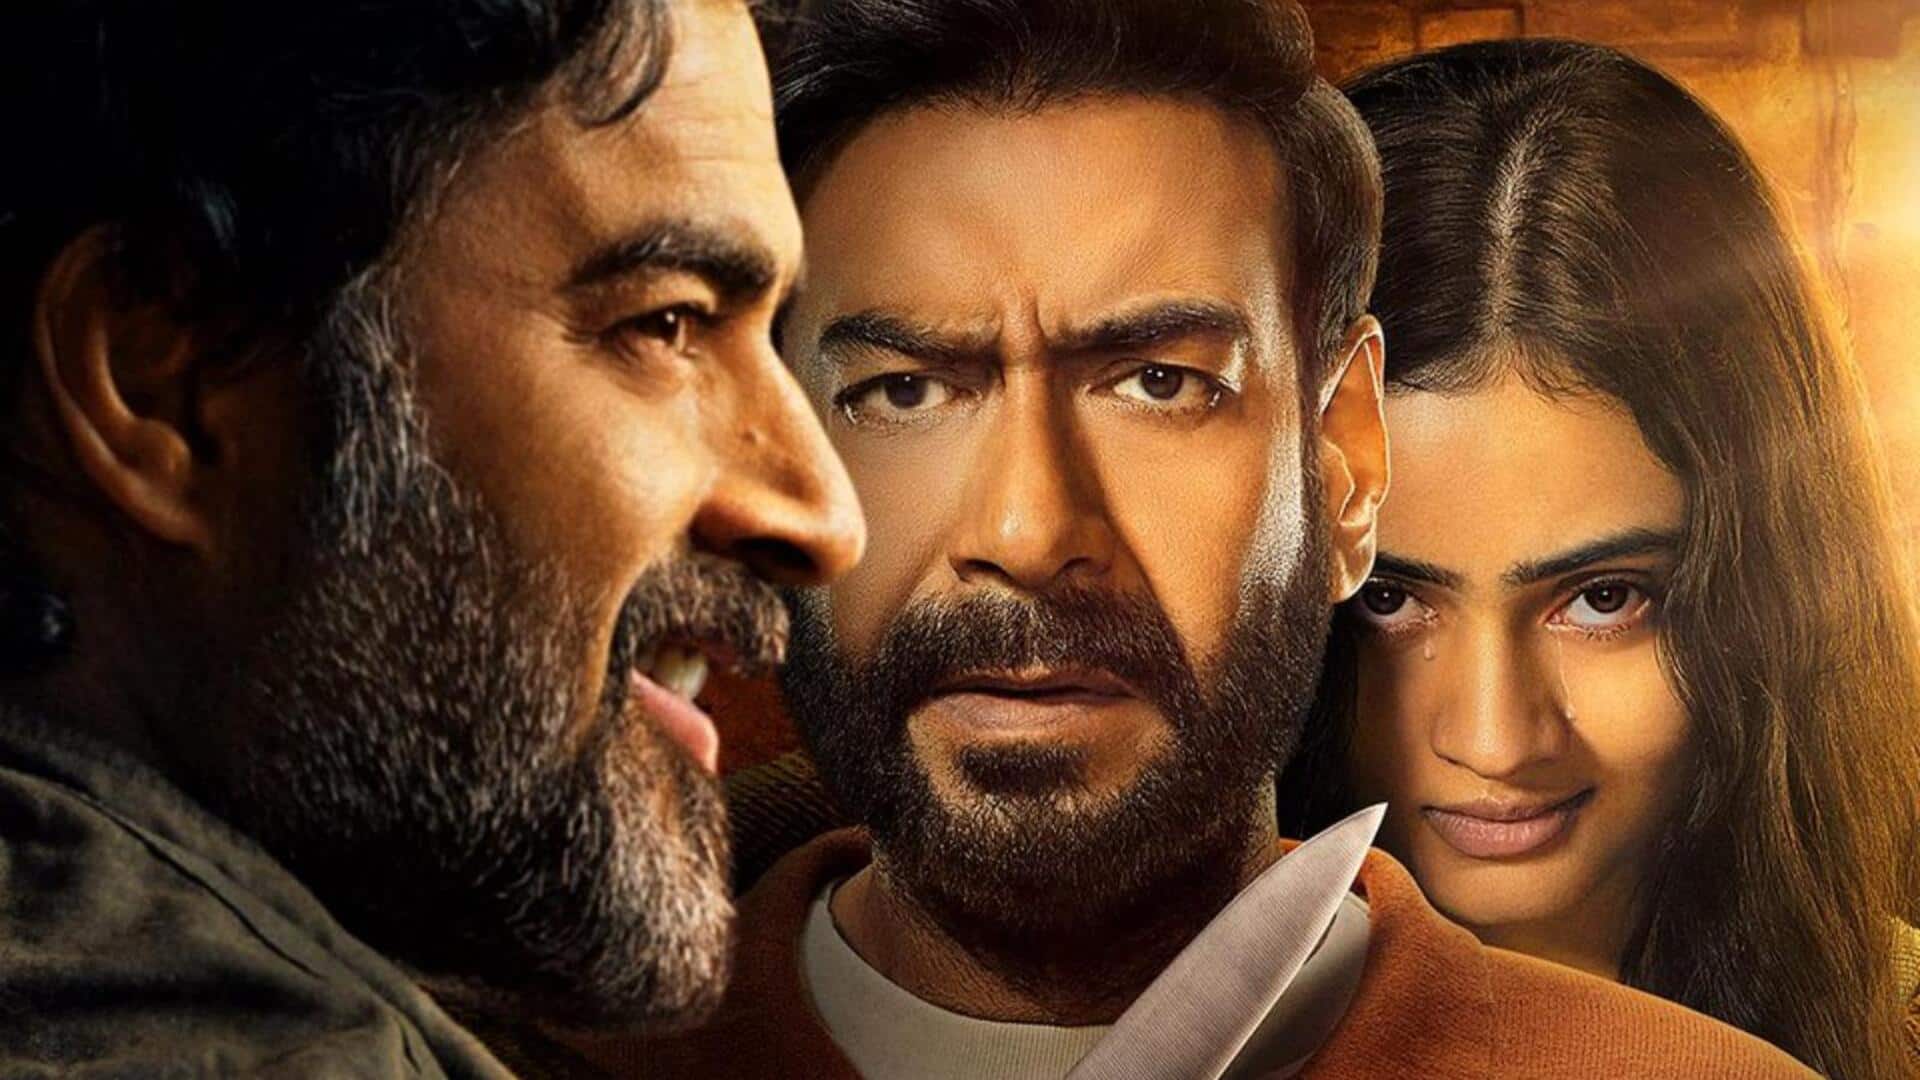 अजय देवगन की फिल्म 'शैतान' रिलीज के तुरंत बाद ऑनलाइन लीक, HD प्रिंट में उपलब्ध